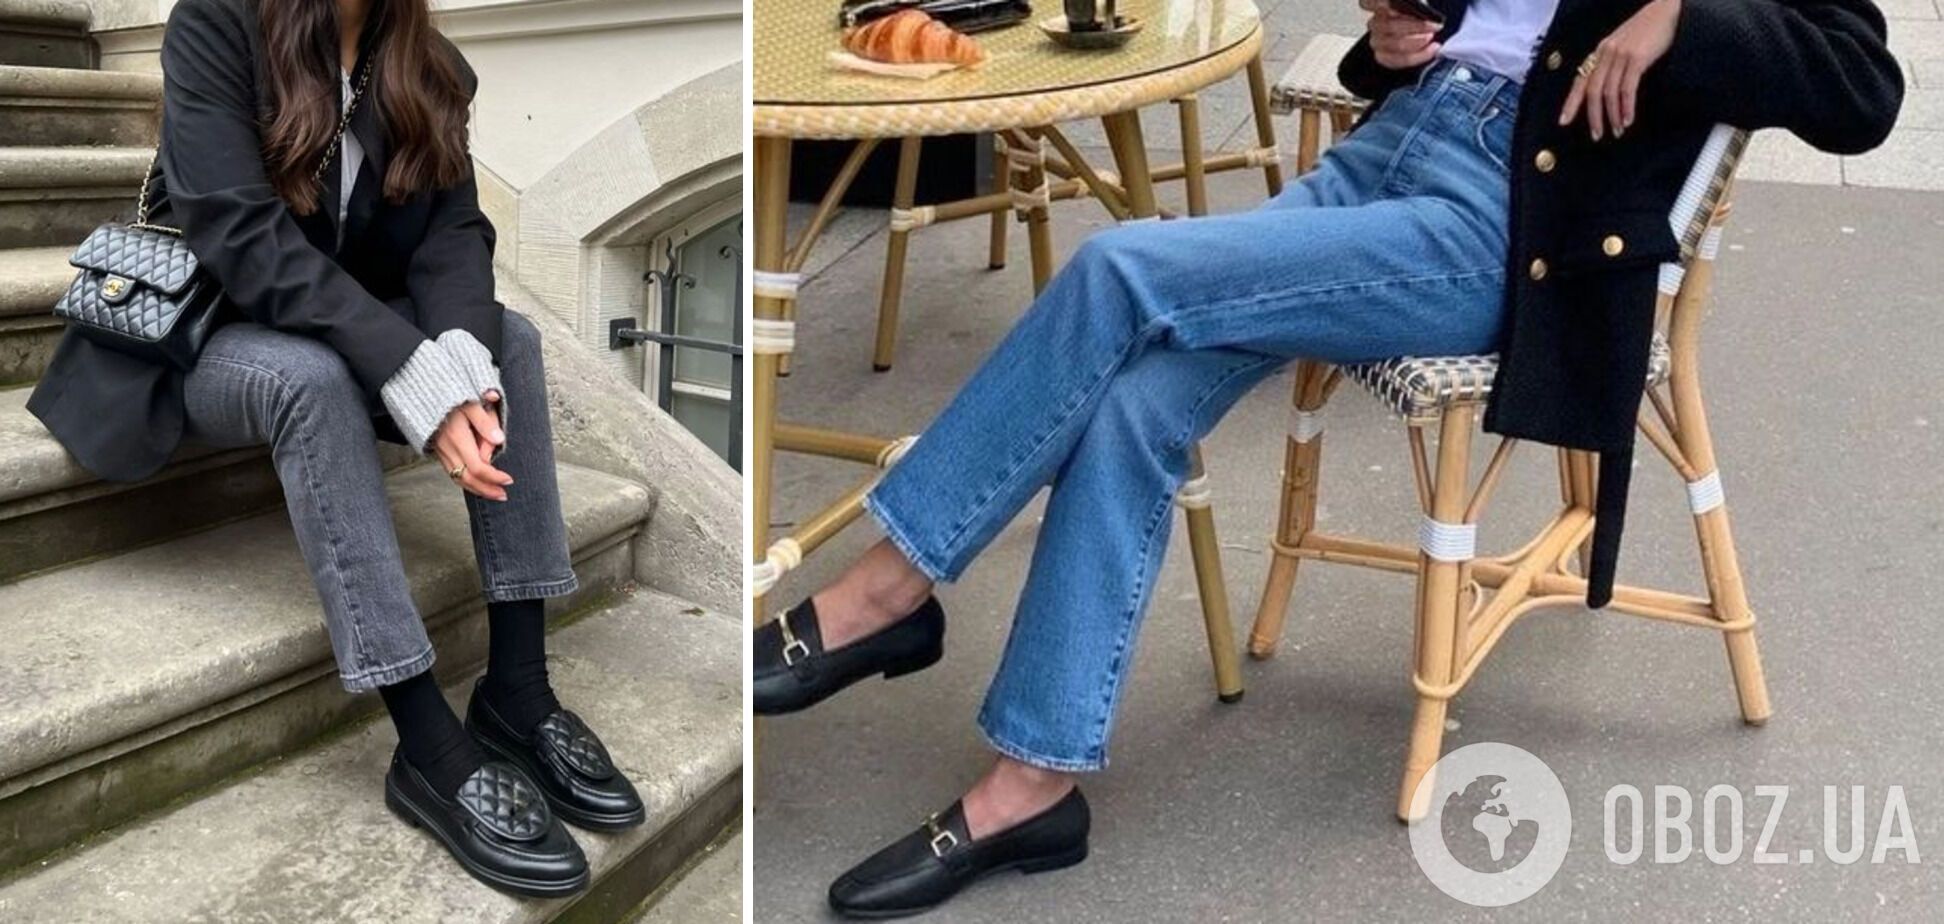 Олена Зеленська вийшла в люди у найзручнішому взутті століття. 5 модних способів носити лофери